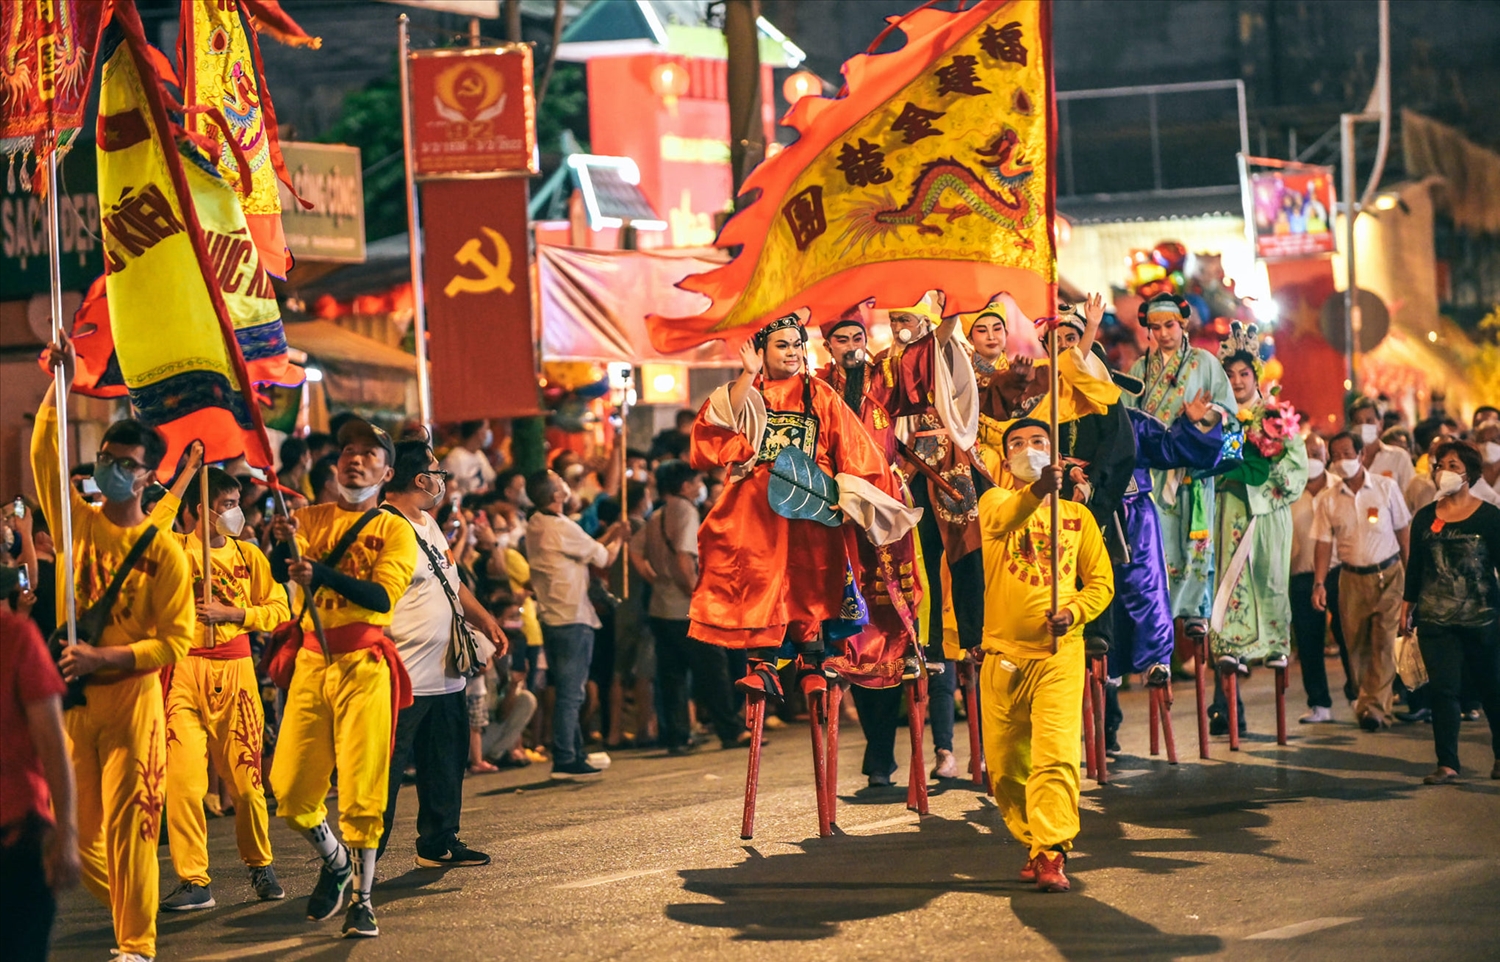 Hoá trang thành các nhân vật thần thoại, diễu hành đường phố trong Lễ hội Nguyên tiêu 2022 